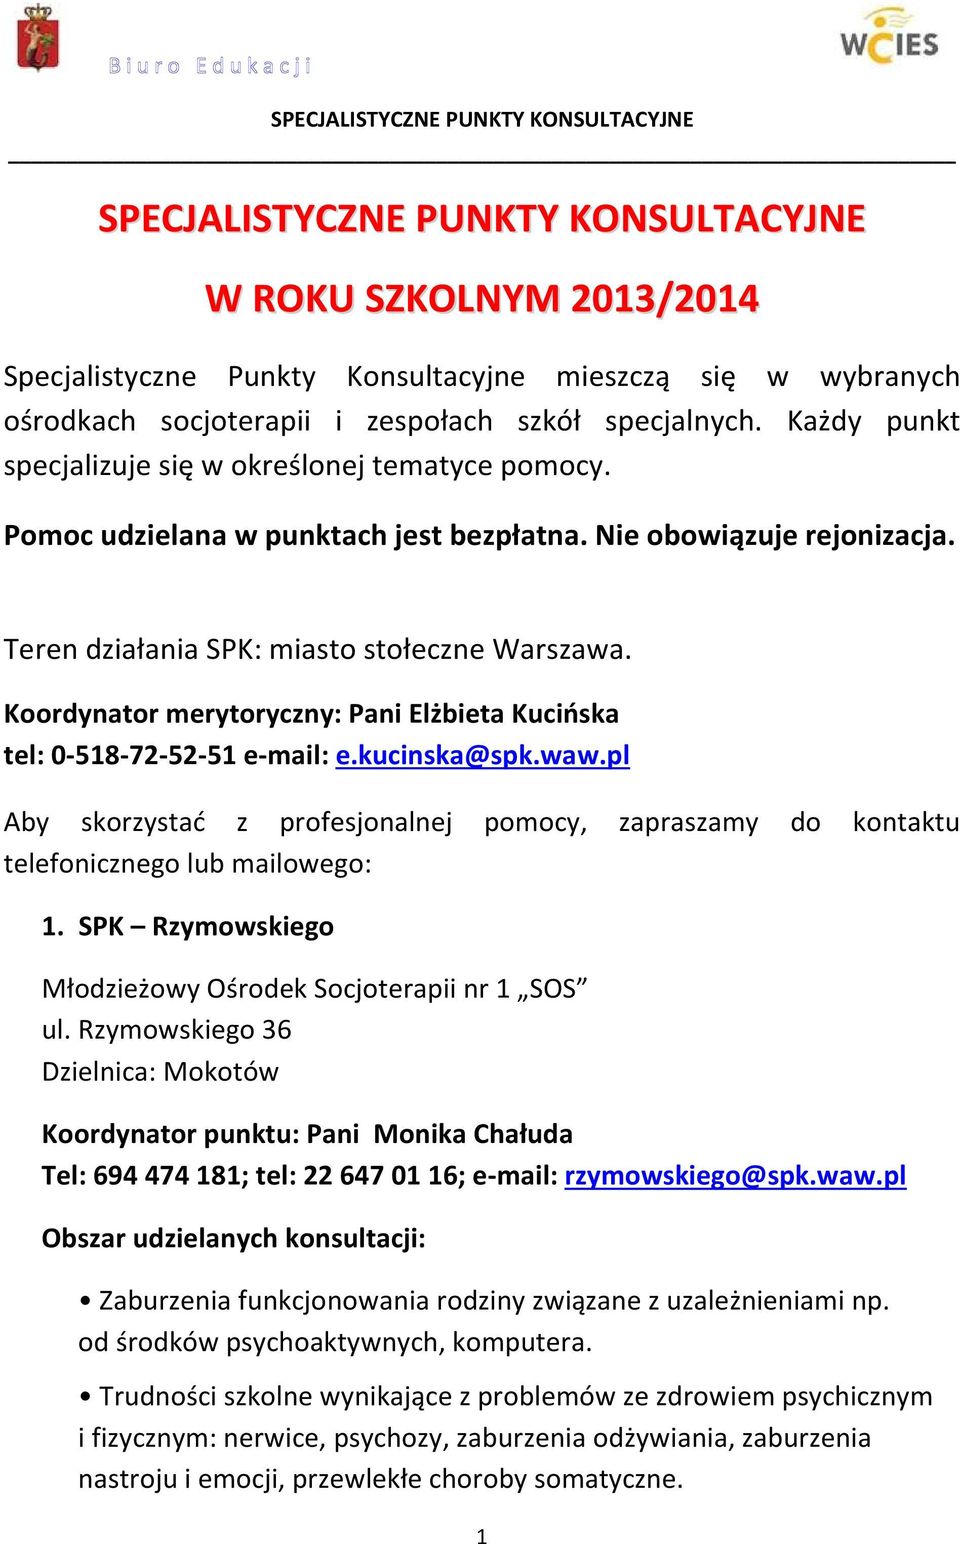 Koordynator merytoryczny: Pani Elżbieta Kucińska tel: 0-518-72-52-51 e-mail: e.kucinska@spk.waw.pl Aby skorzystać z profesjonalnej pomocy, zapraszamy do kontaktu telefonicznego lub mailowego: 1.